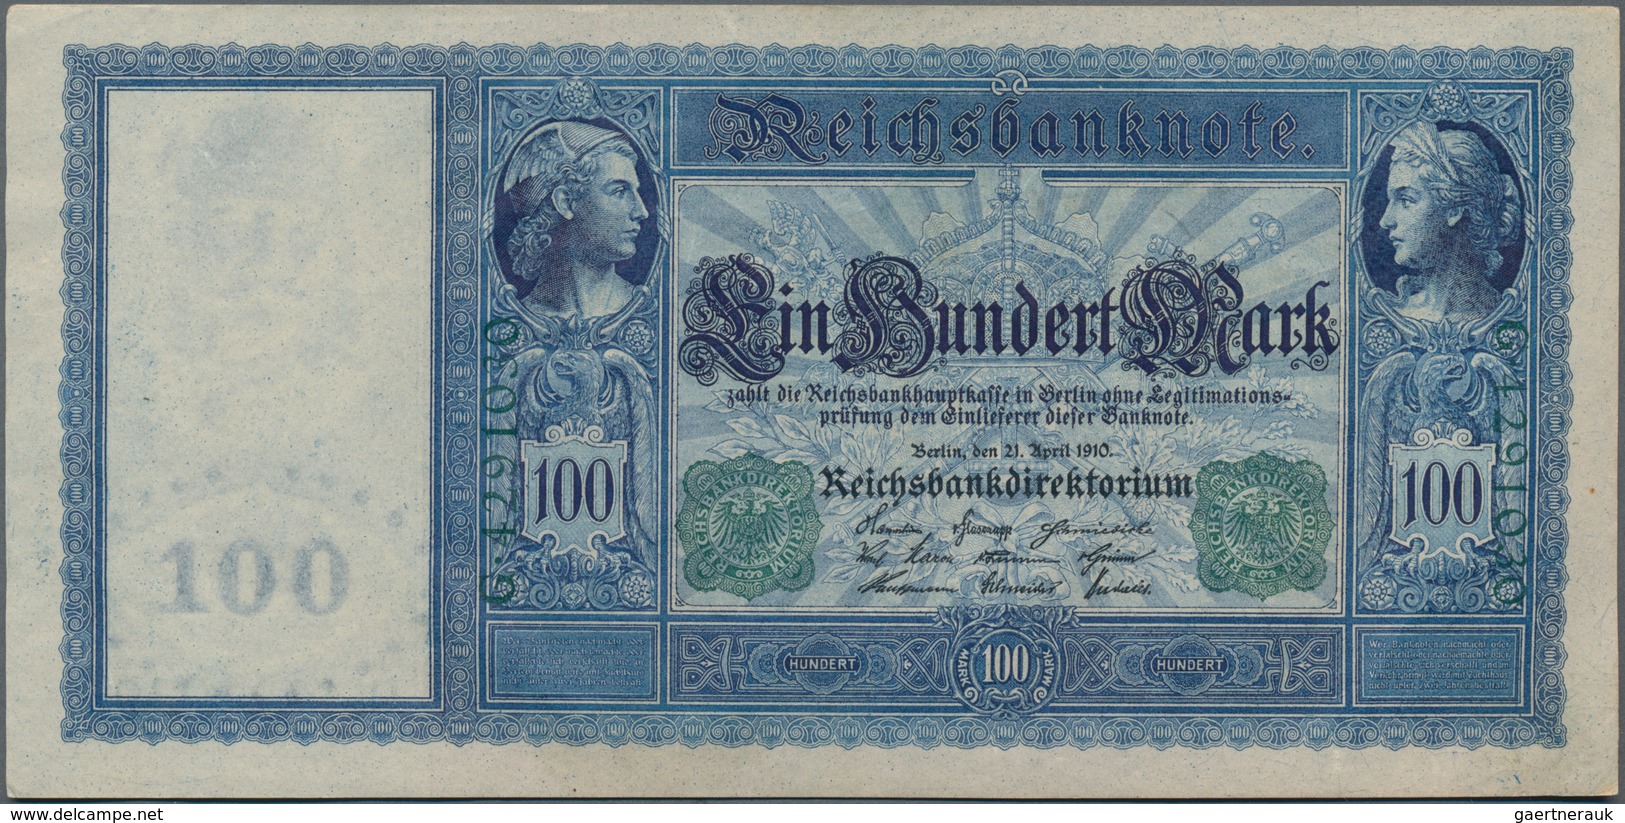 Deutschland - Deutsches Reich bis 1945: Kleines Lot mit 12 Banknoten der Serien 1908-1918, dabei 2x